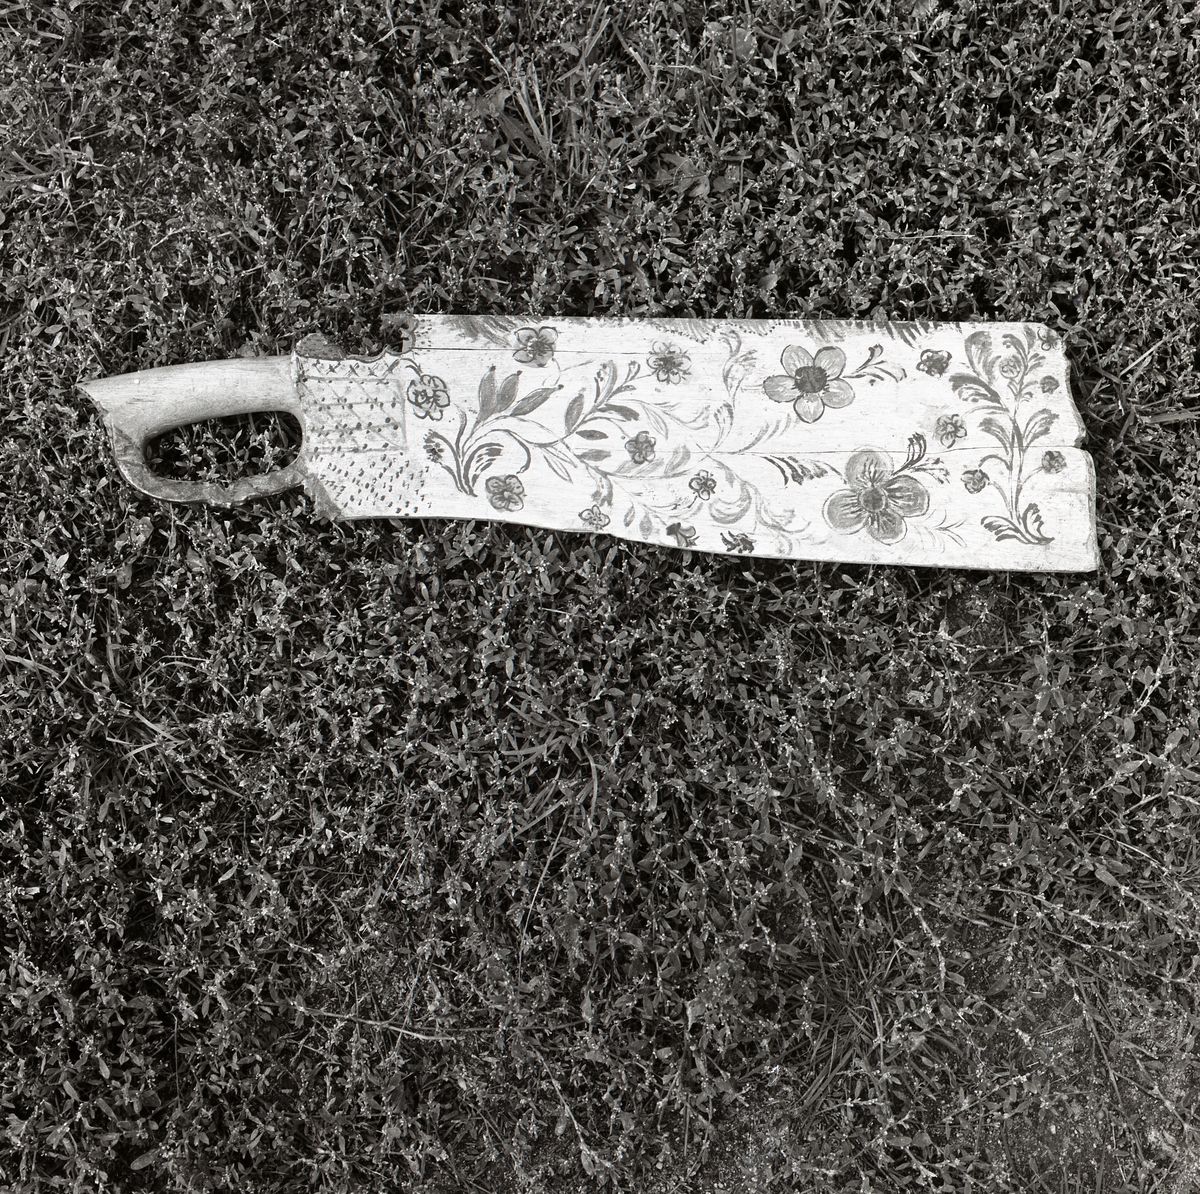 En skäktkniv fint dekorerad med blommönster, Trönö 1978.